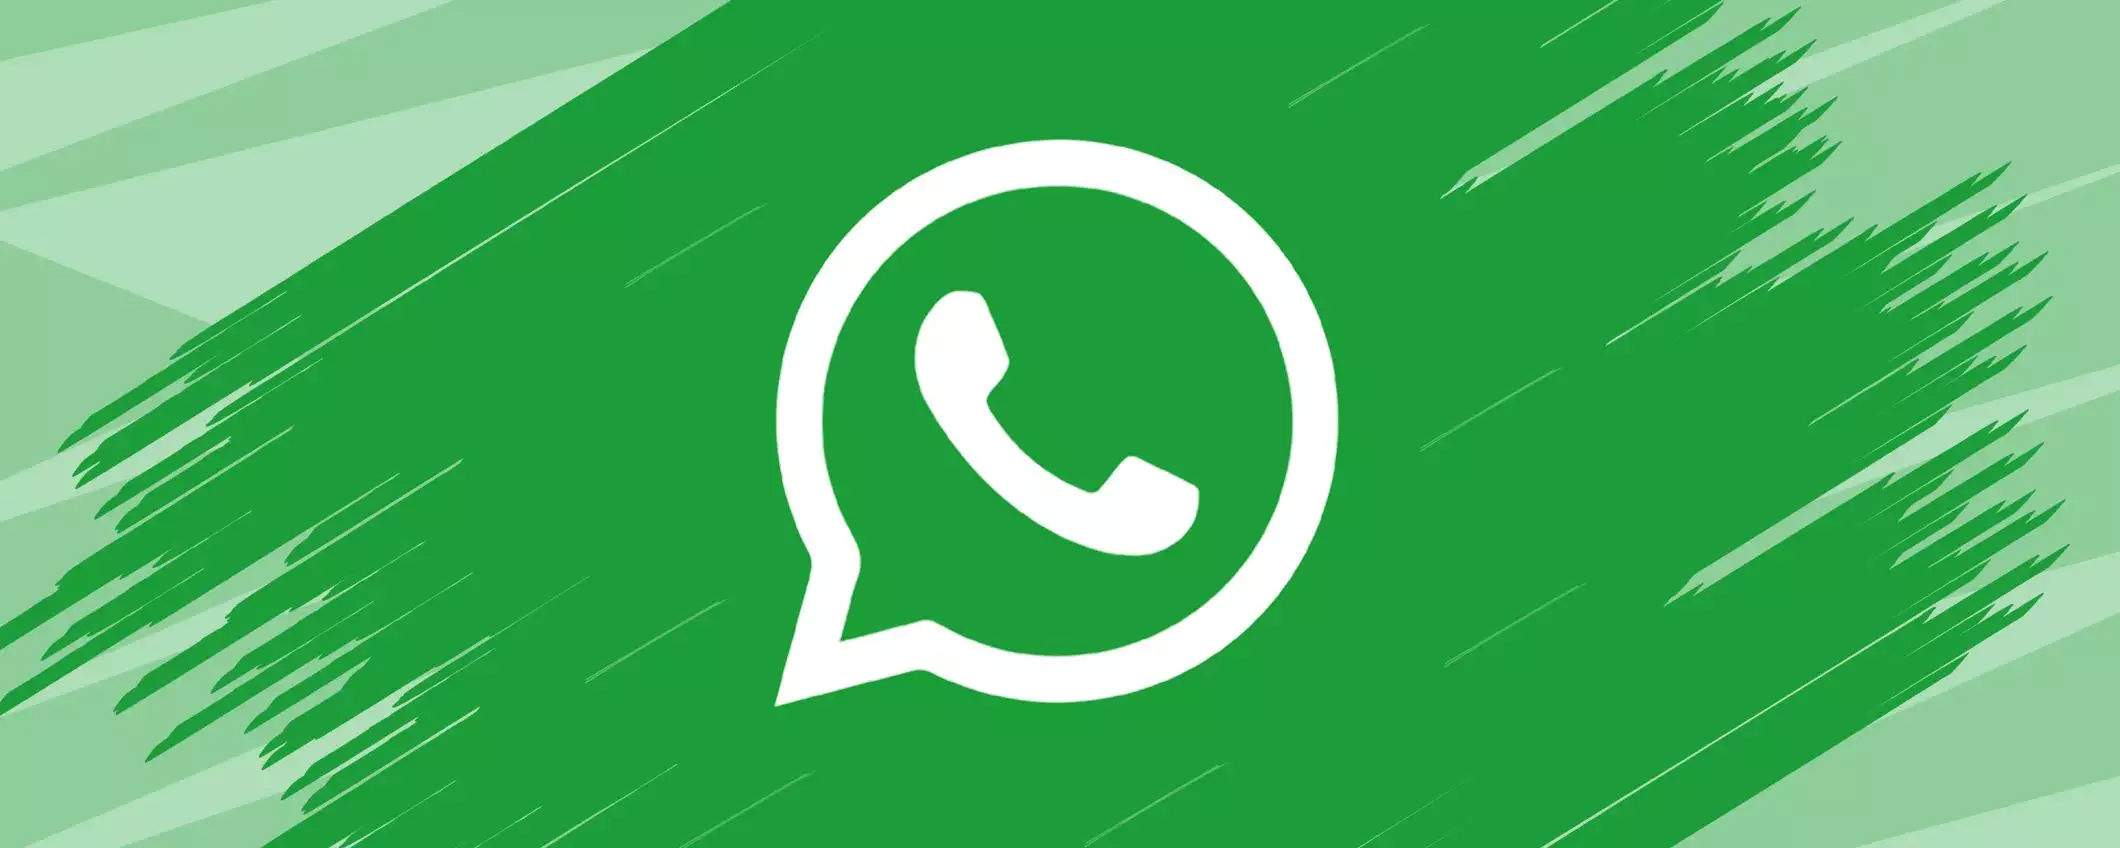 Modificare i messaggi di WhatsApp: ora si può, anche in Italia